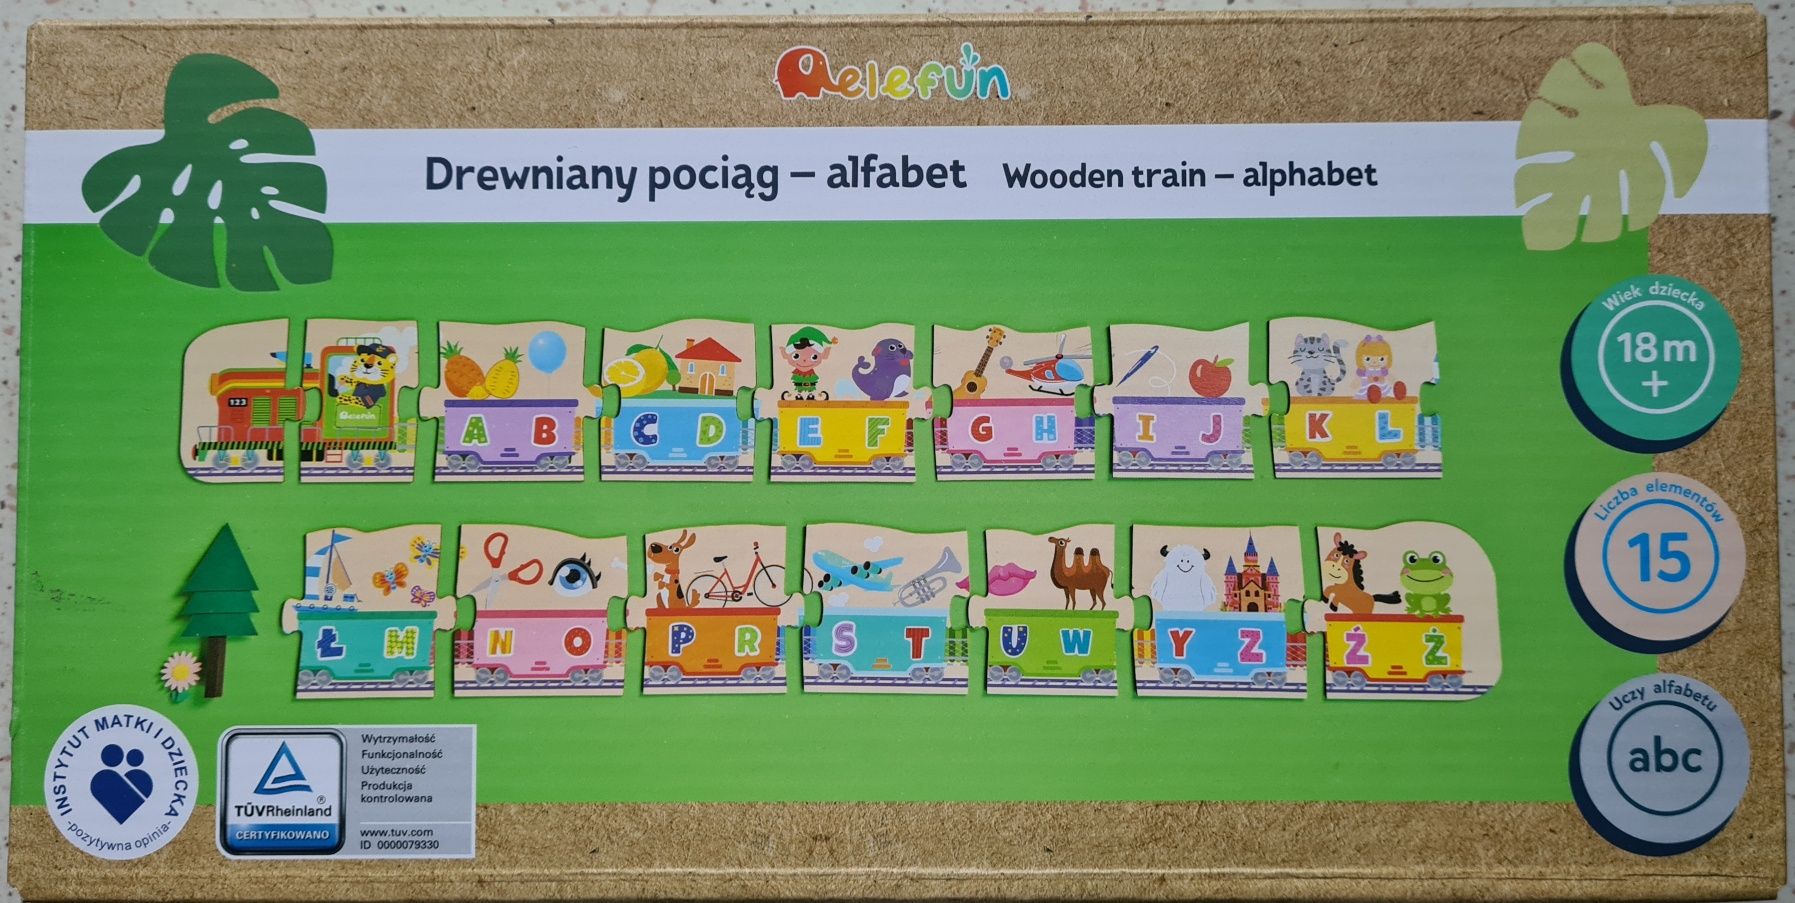 Drewniany pociąg alfabet